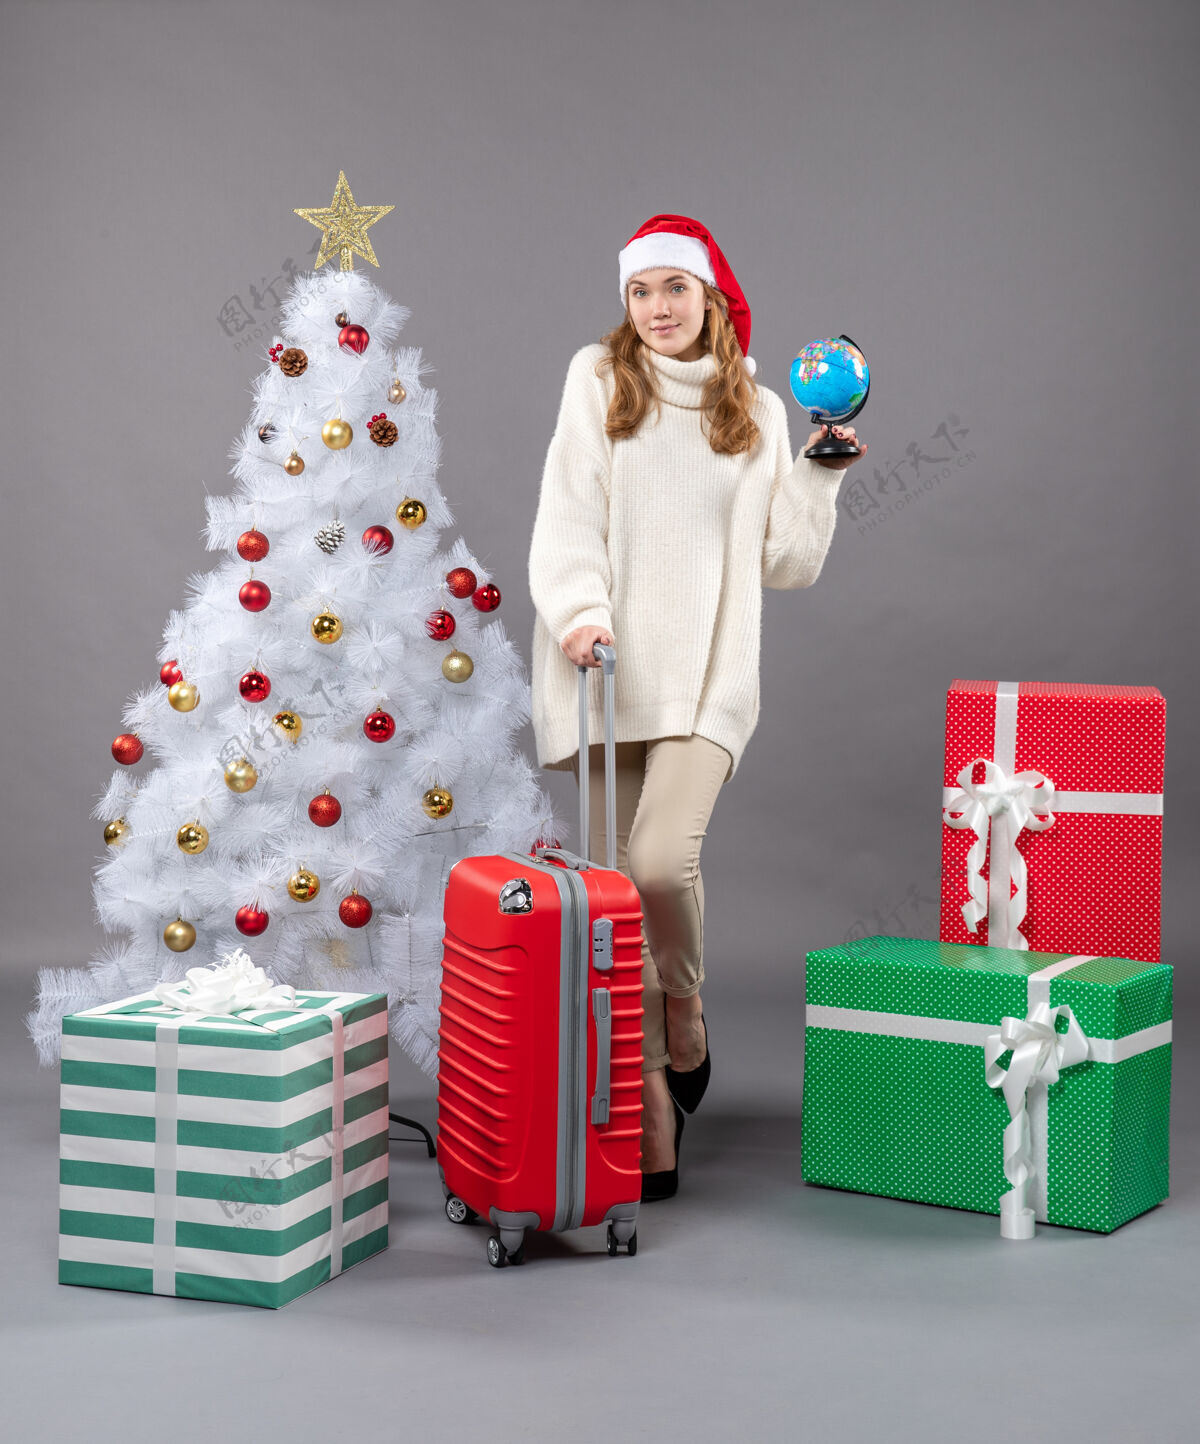 圣诞正面图金发女孩戴着圣诞帽拿着地球仪和红色手提箱假日快乐礼品盒